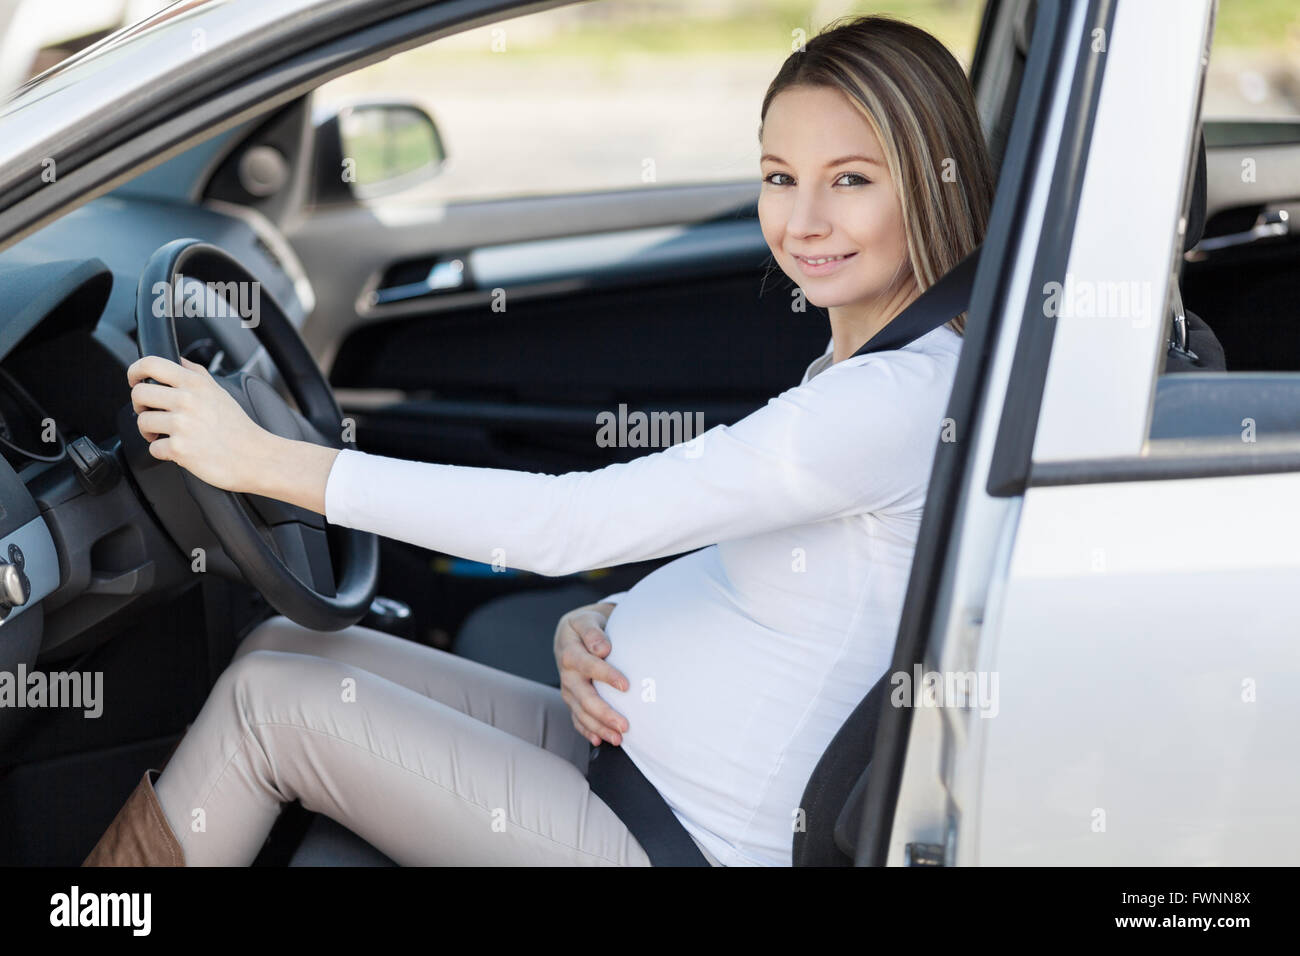 Schwangere Frau ihr Auto Sicherheitsgurt tragen Stockfotografie - Alamy